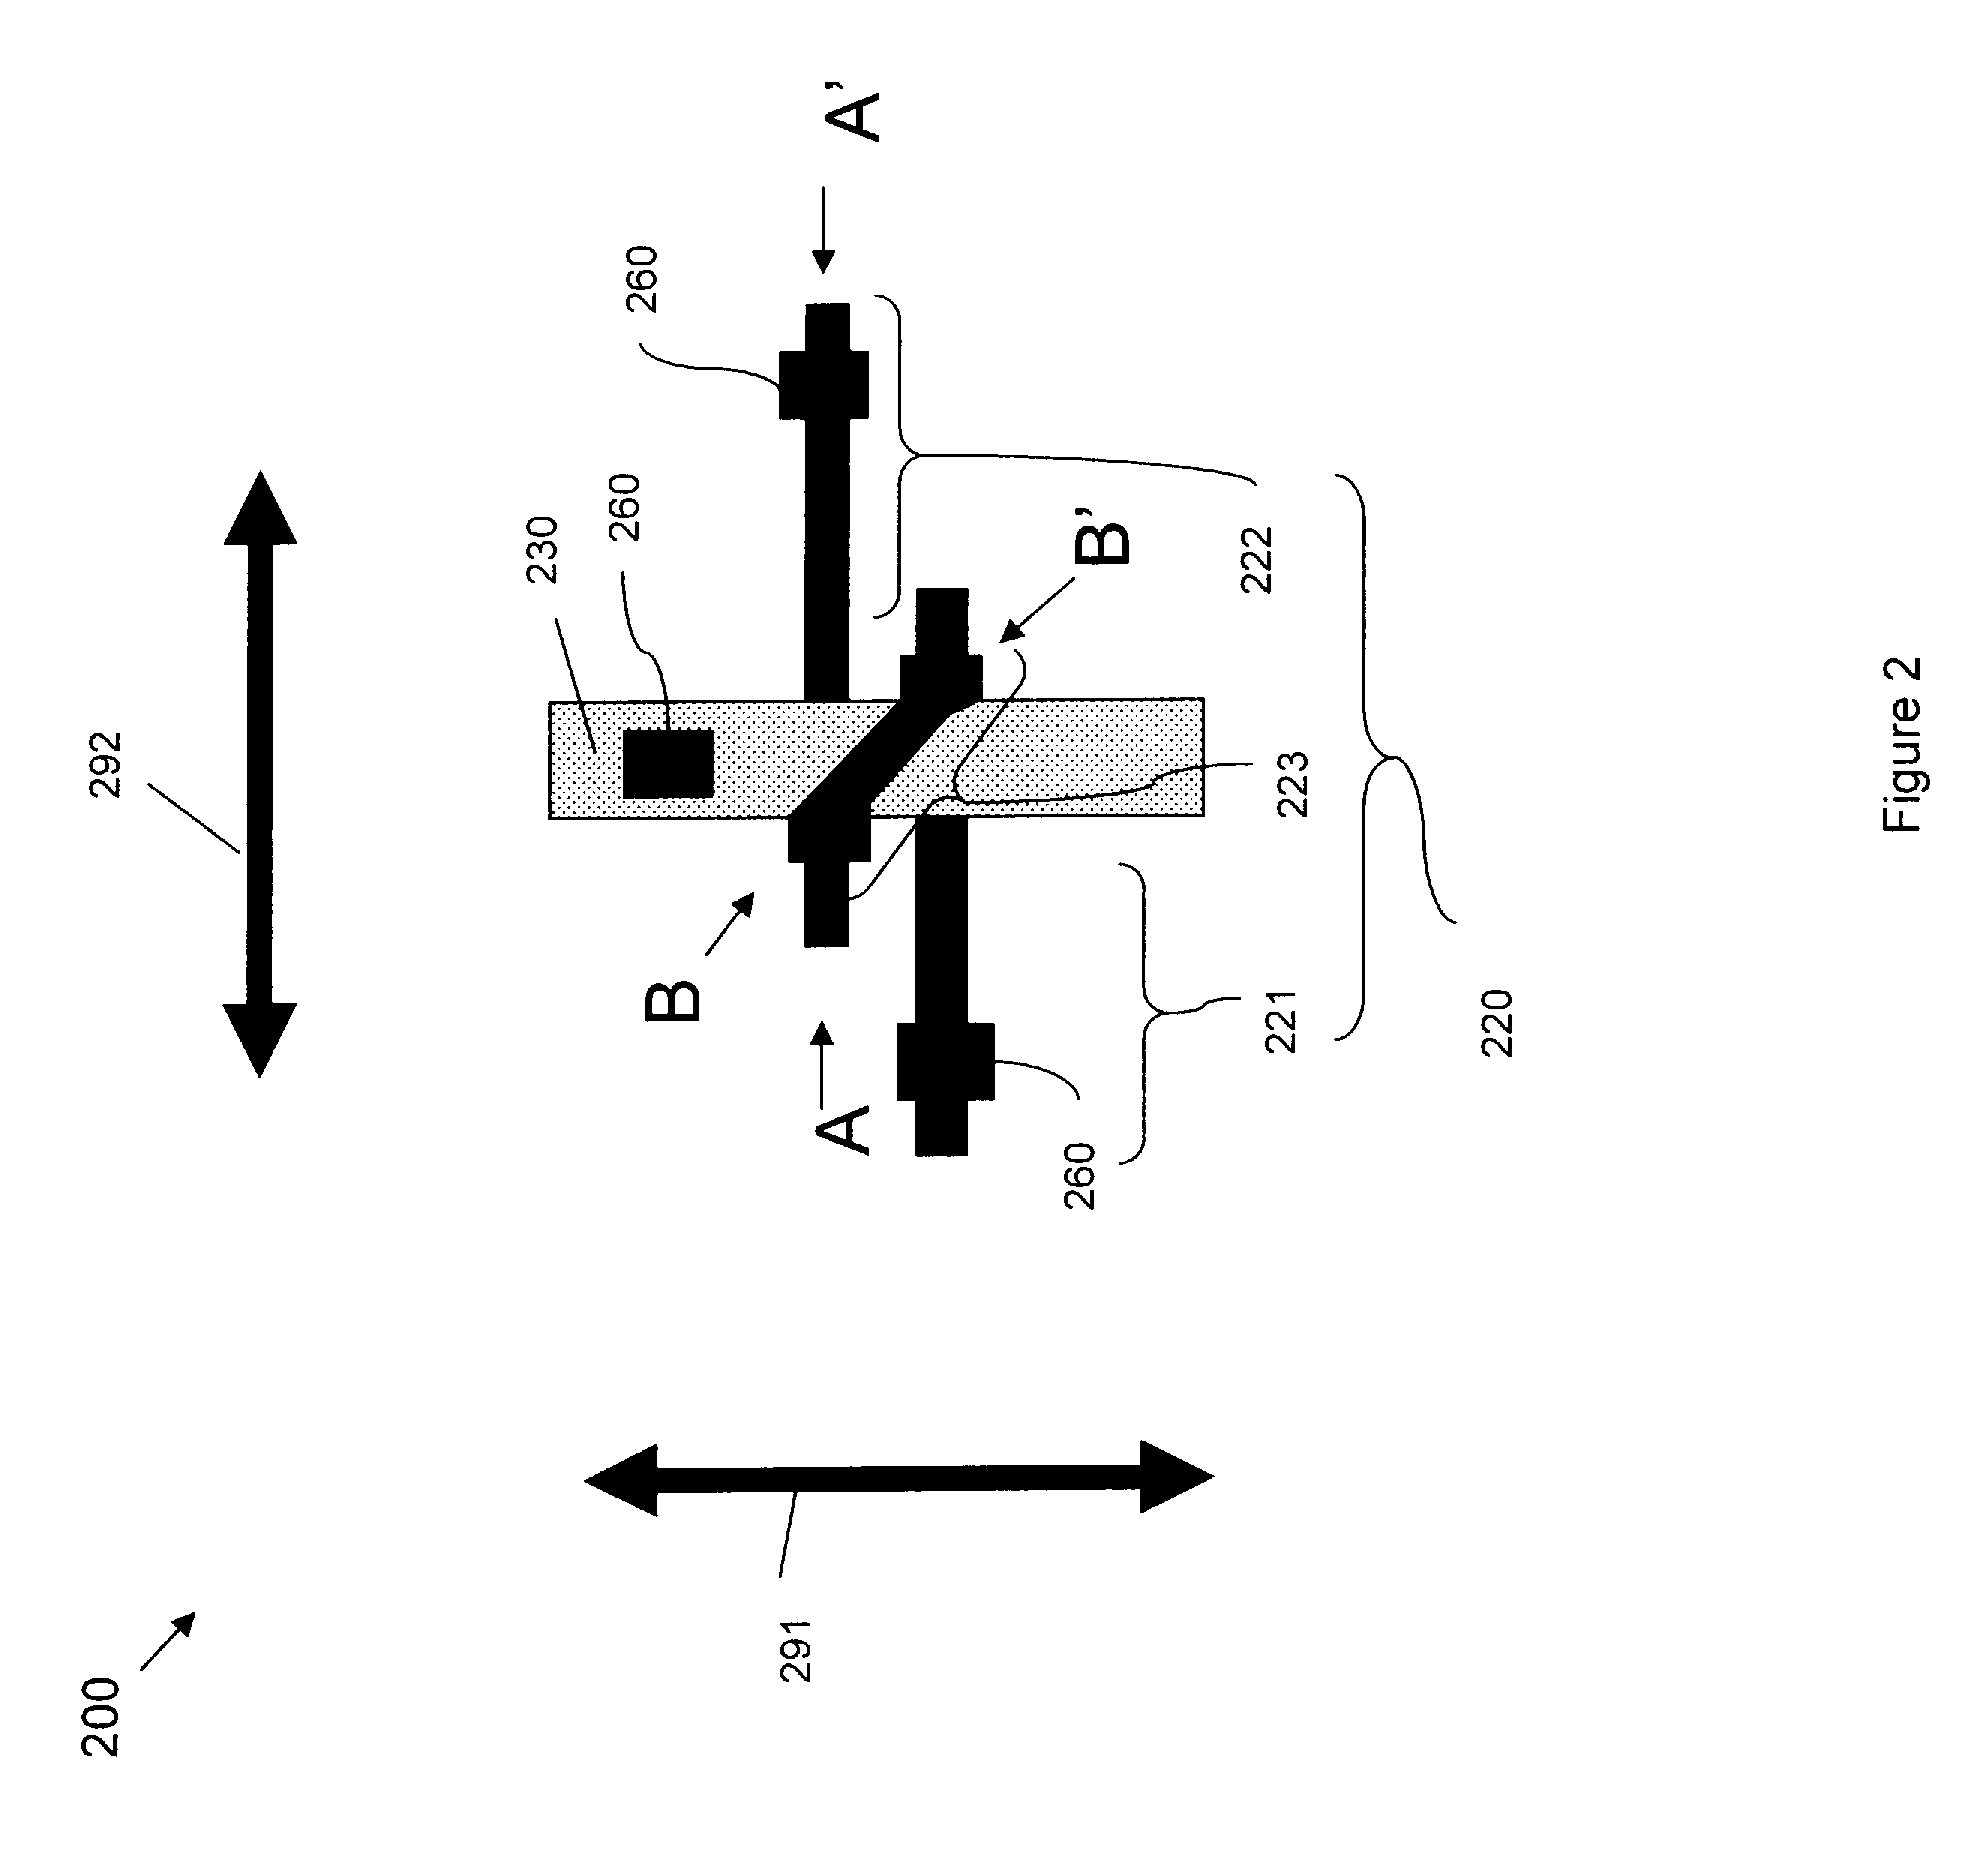 Field effect transistor